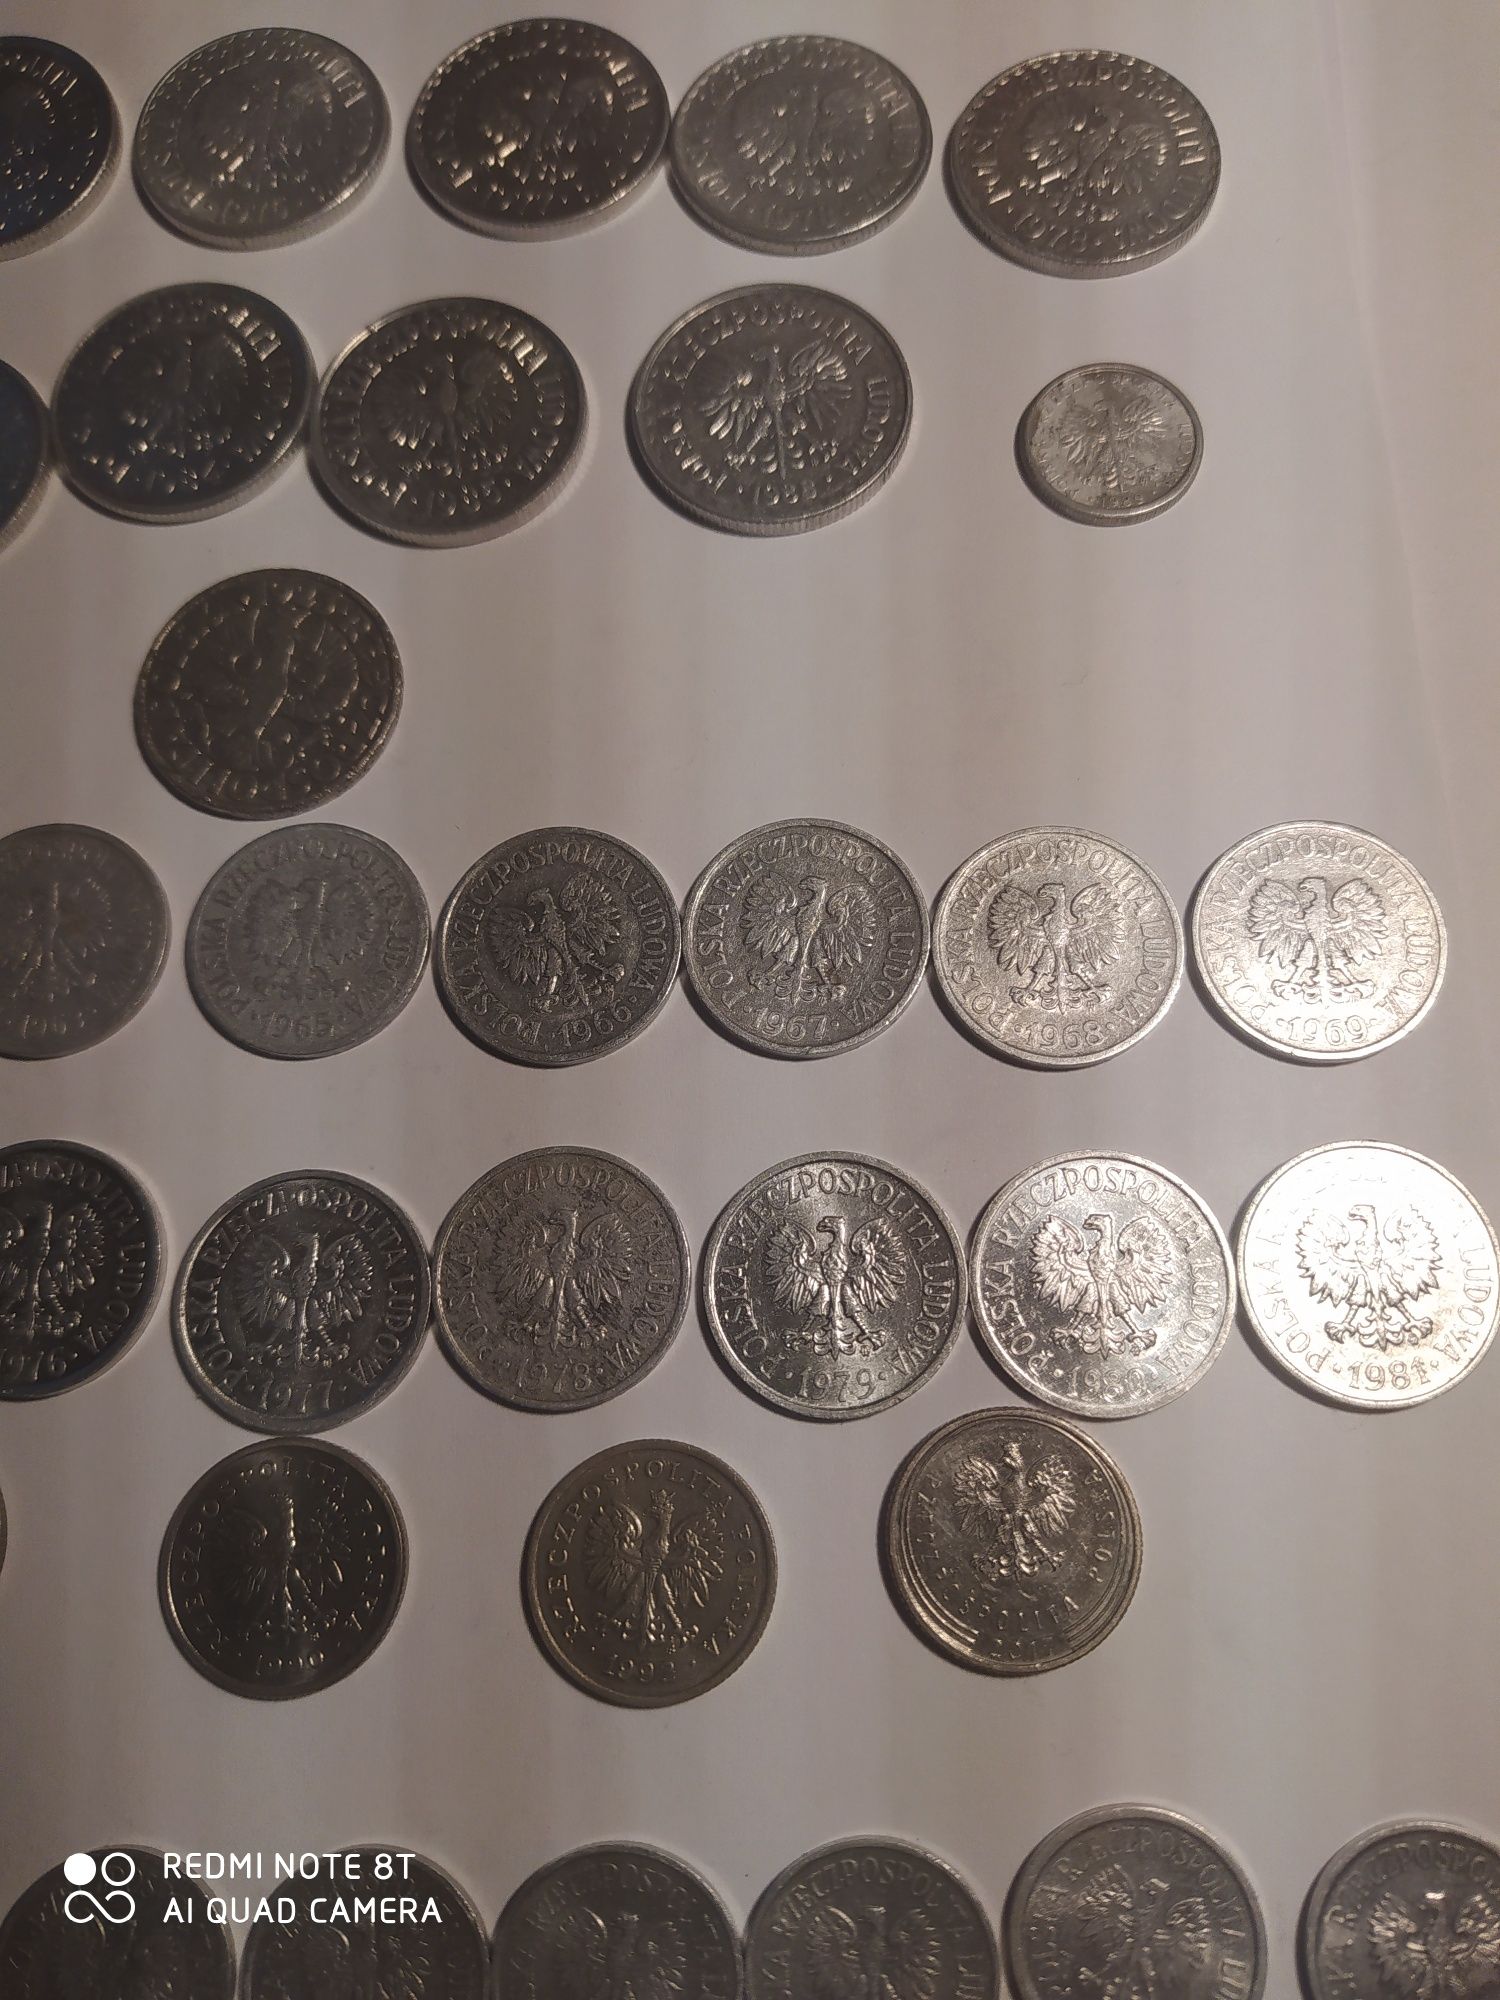 Polskie monety dla kolekcjonera 1 zł, 50 gr, 20 gr, 10 gr